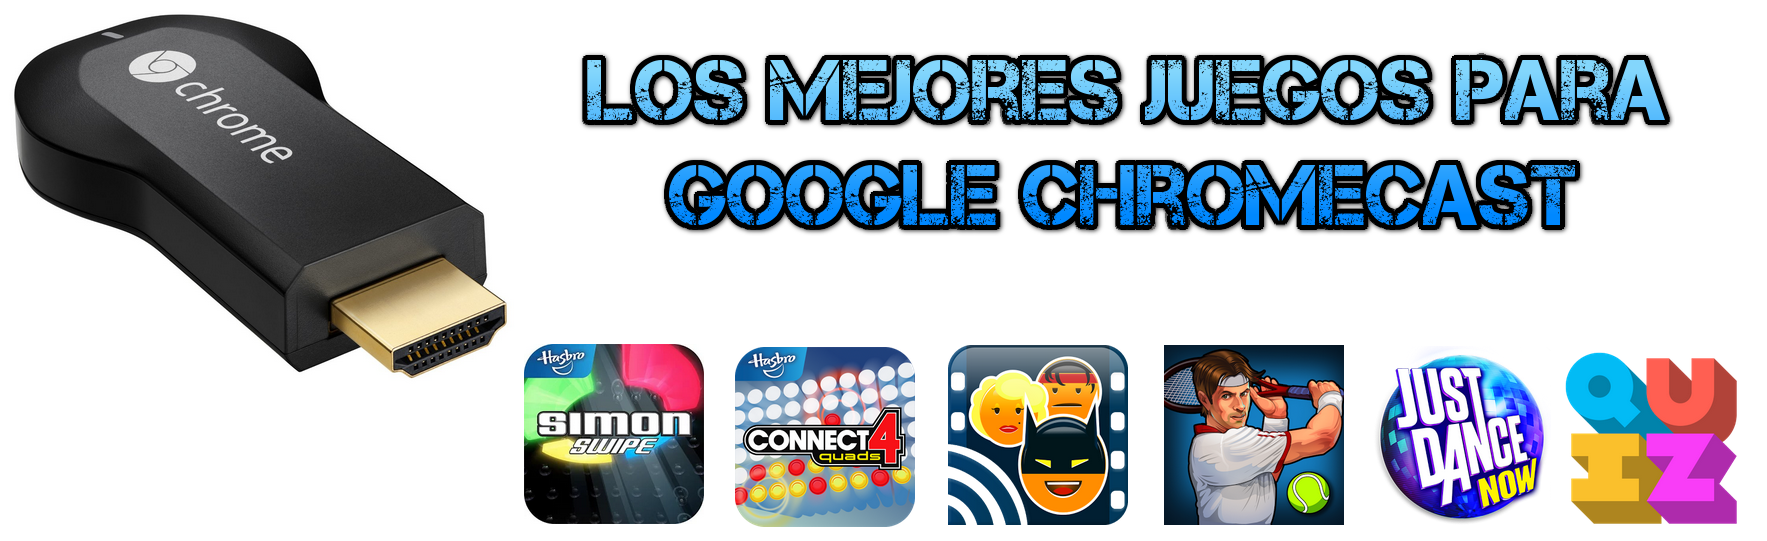 Alternativ Verdensvindue Ingeniører Estos son los mejores Juegos para ChromeCast - Un geek en Colombia